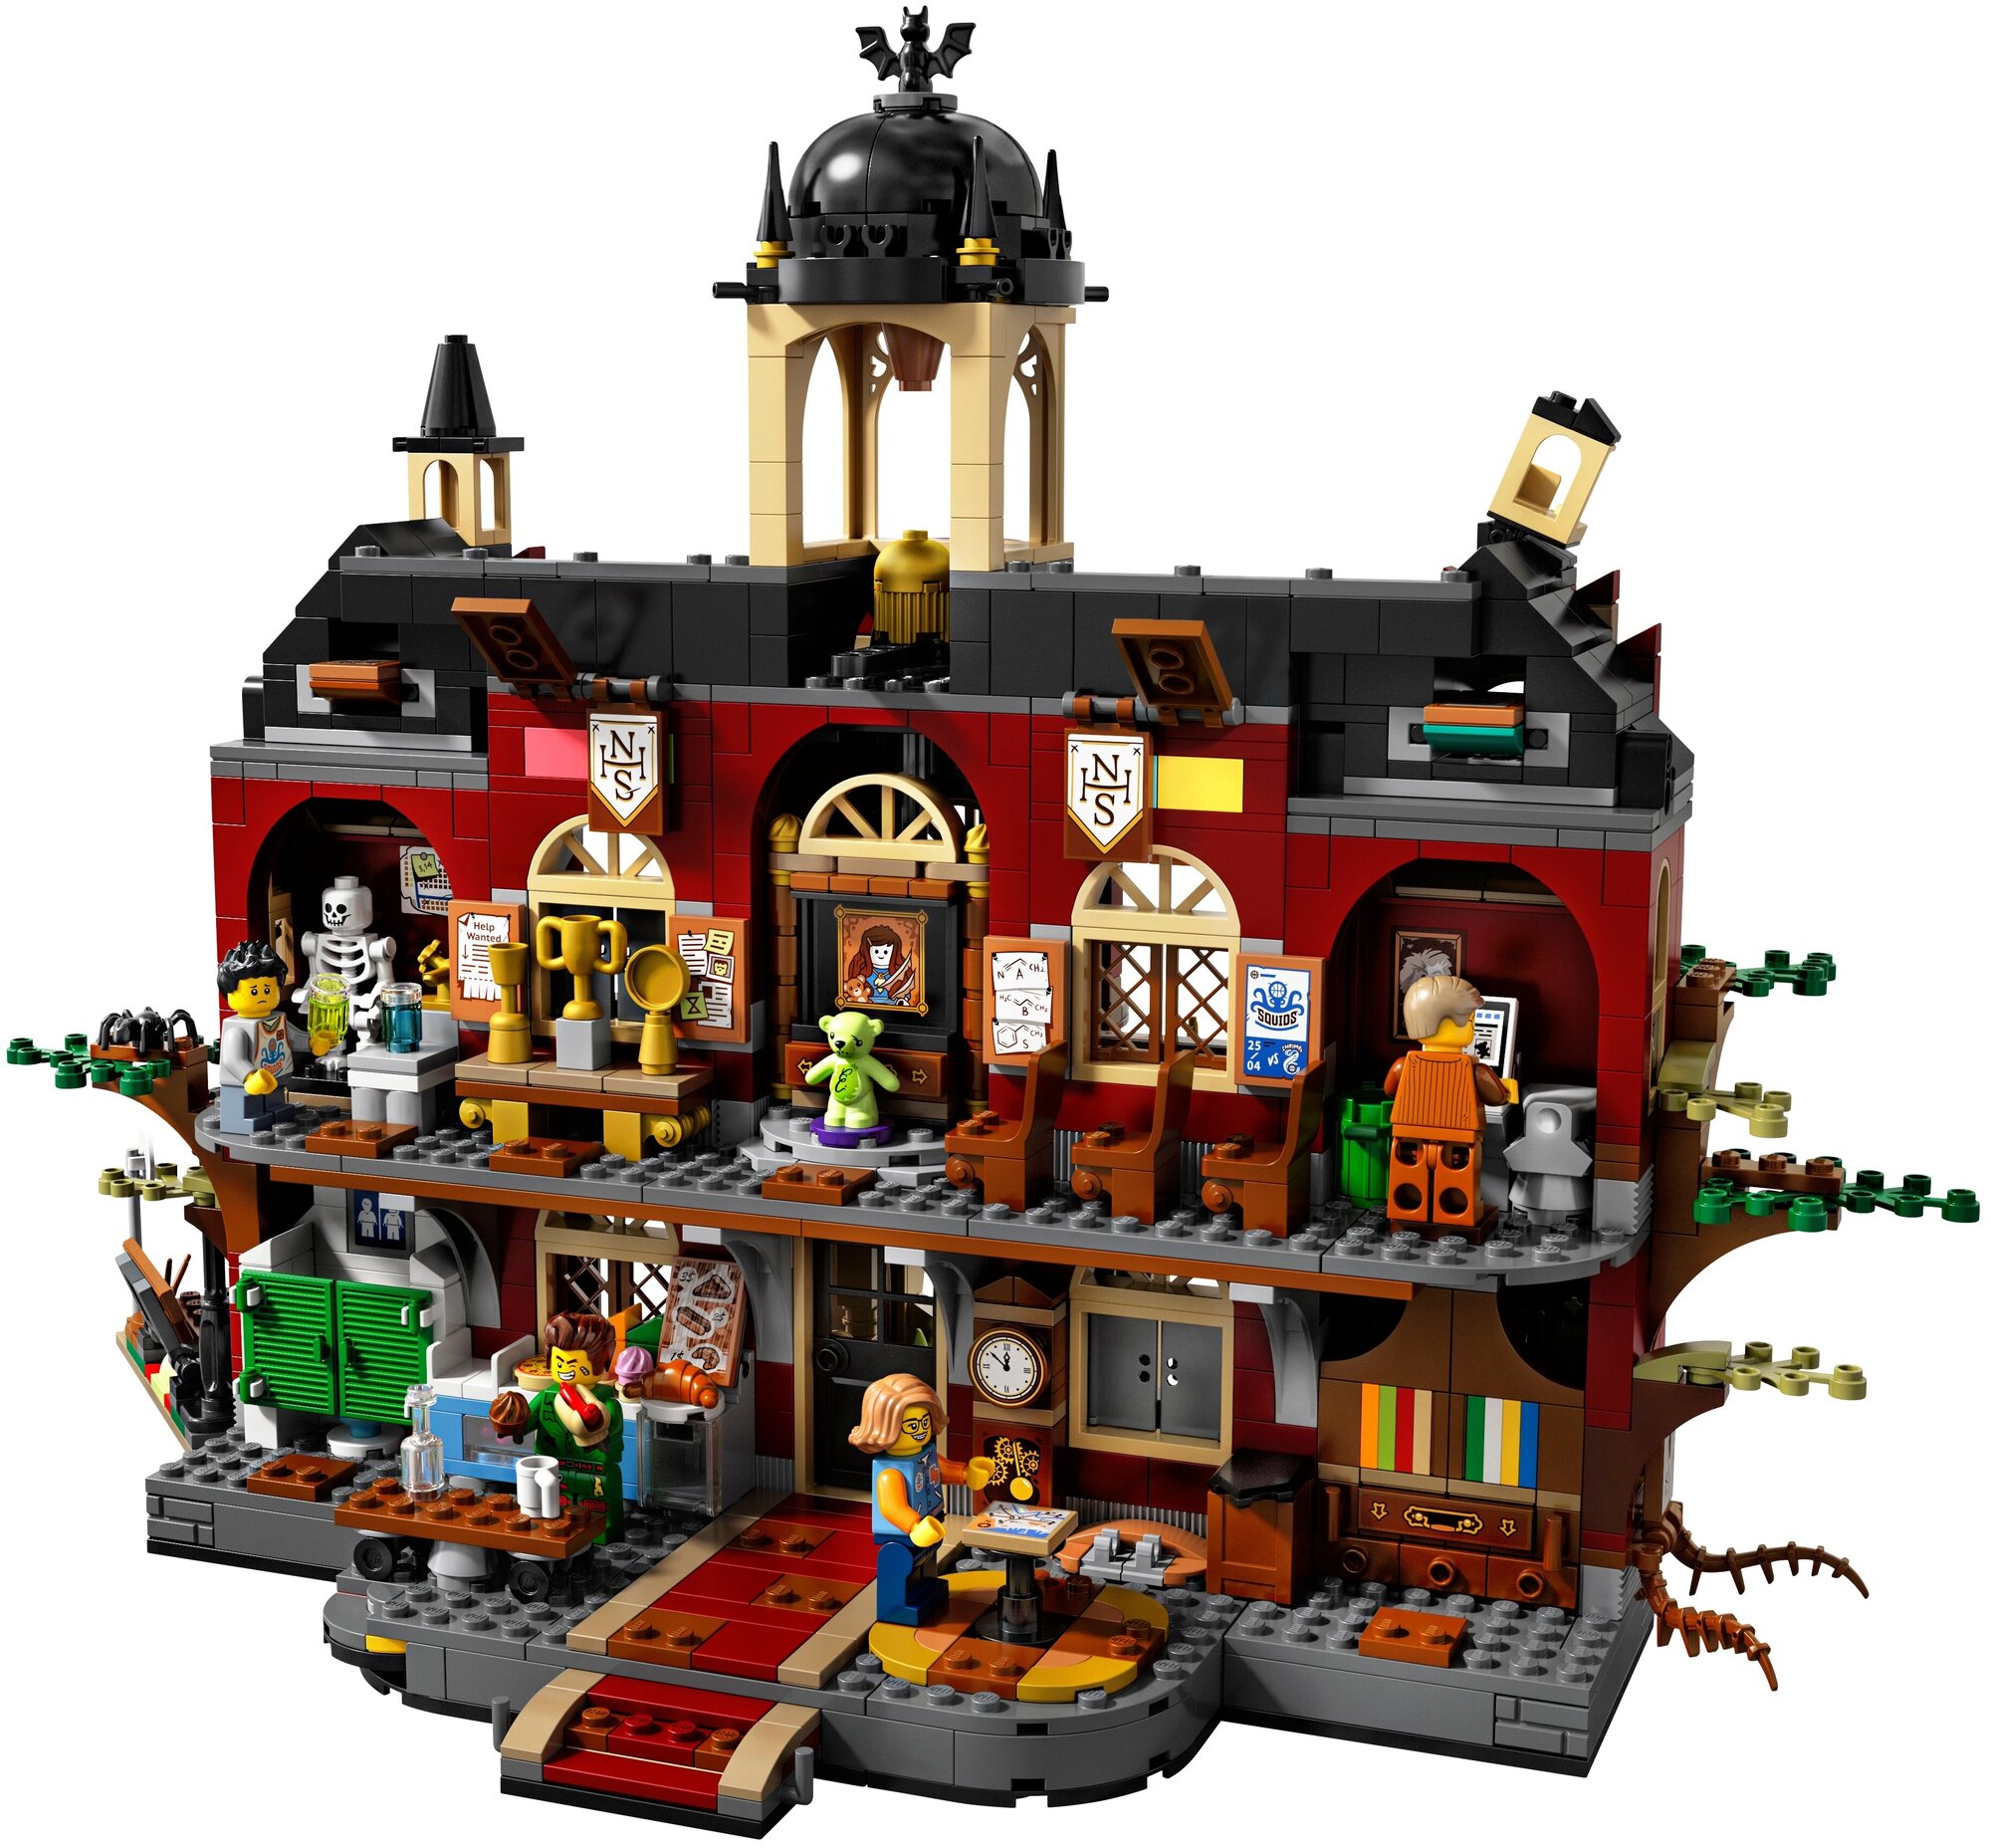 Конструктор Lego Hidden Side Школа с привидениями Ньюбери, 1474 детали (70425) - фото №3